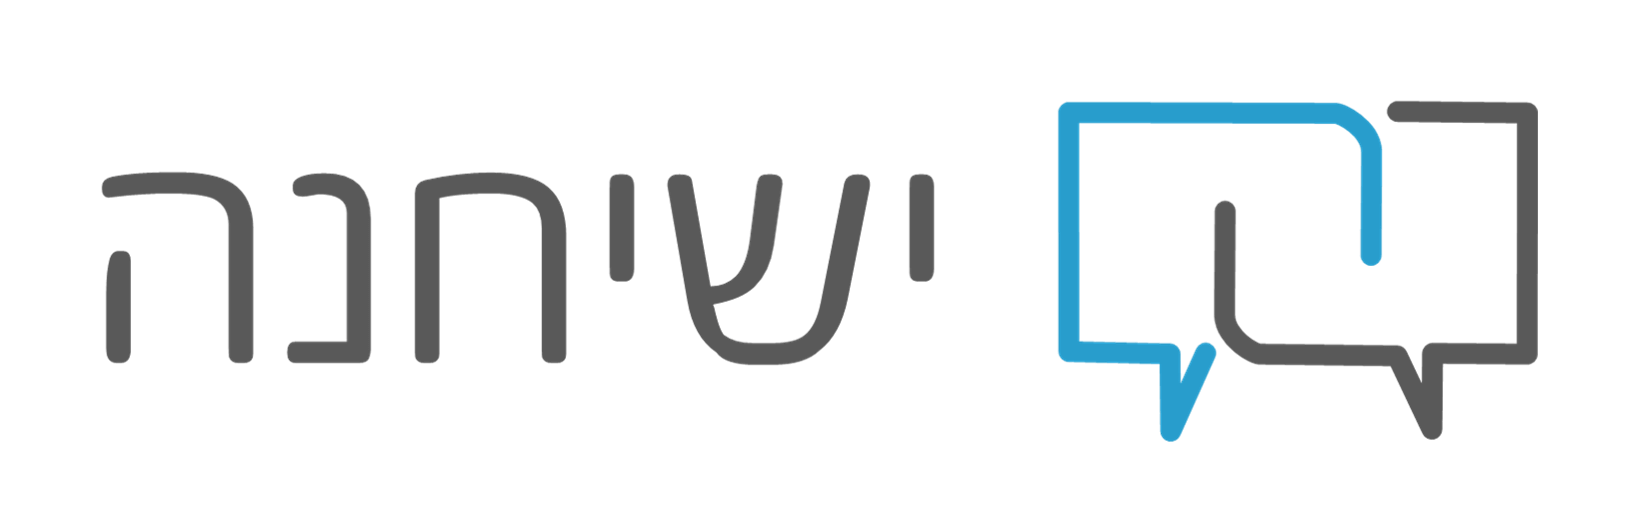 logo yesichena new